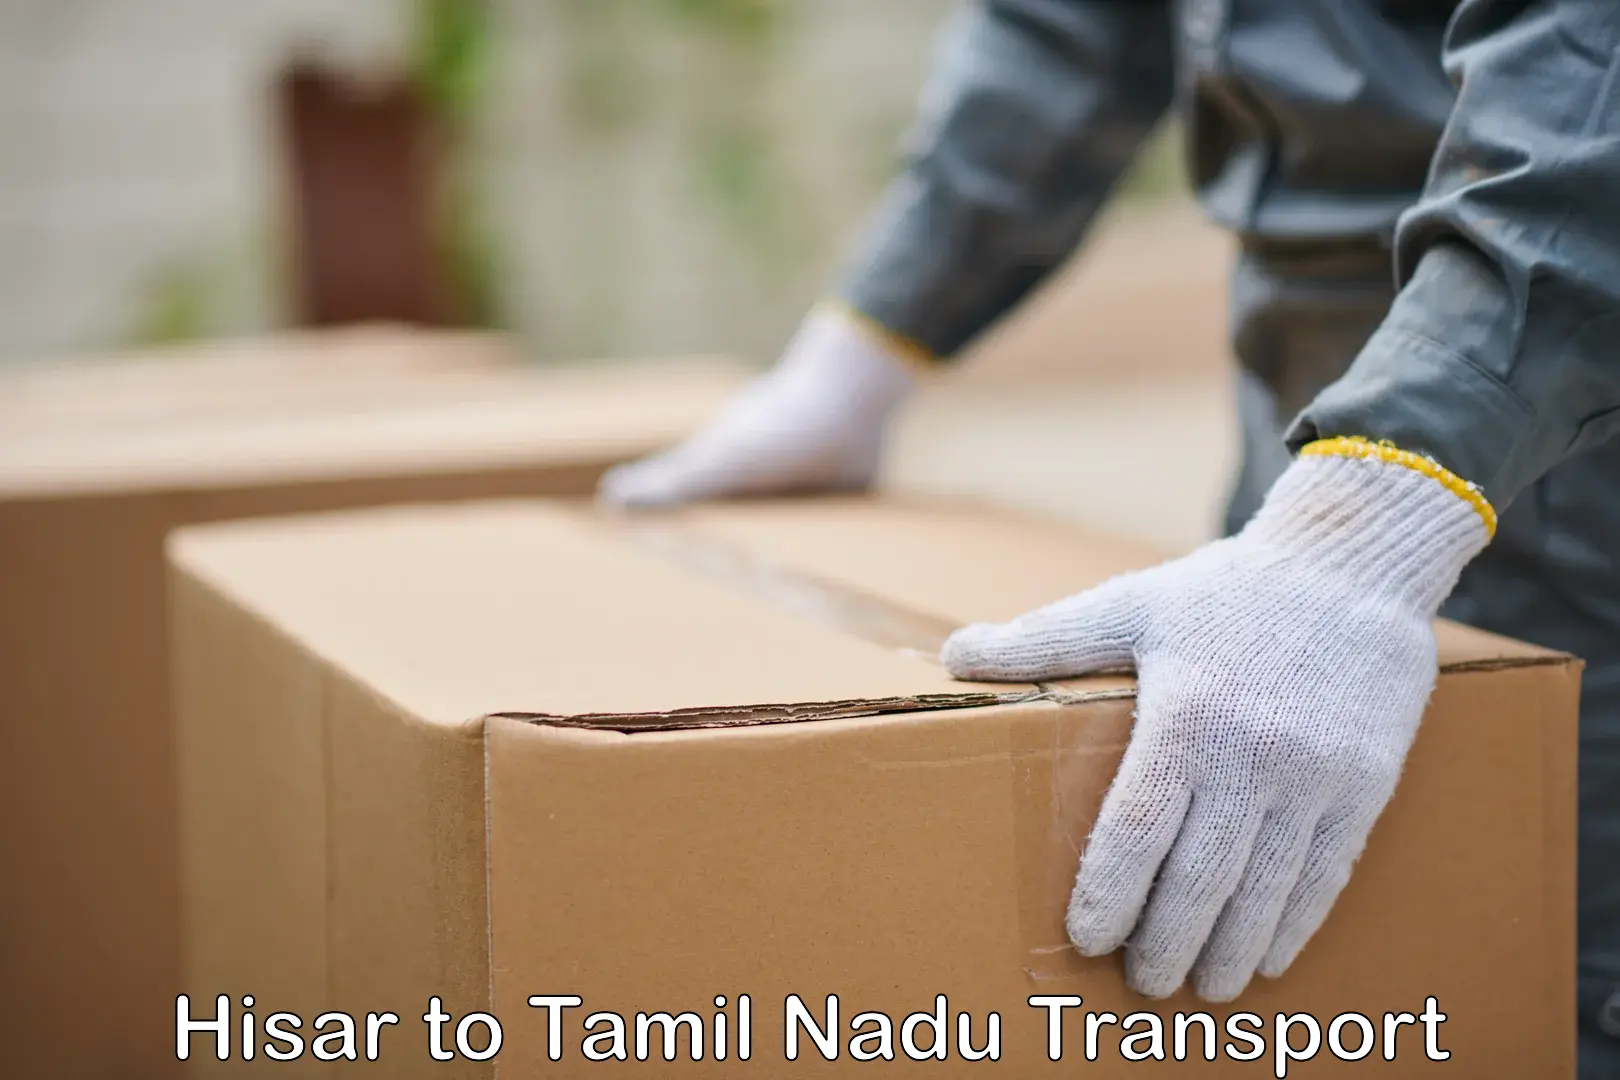 Shipping services Hisar to Tirunelveli